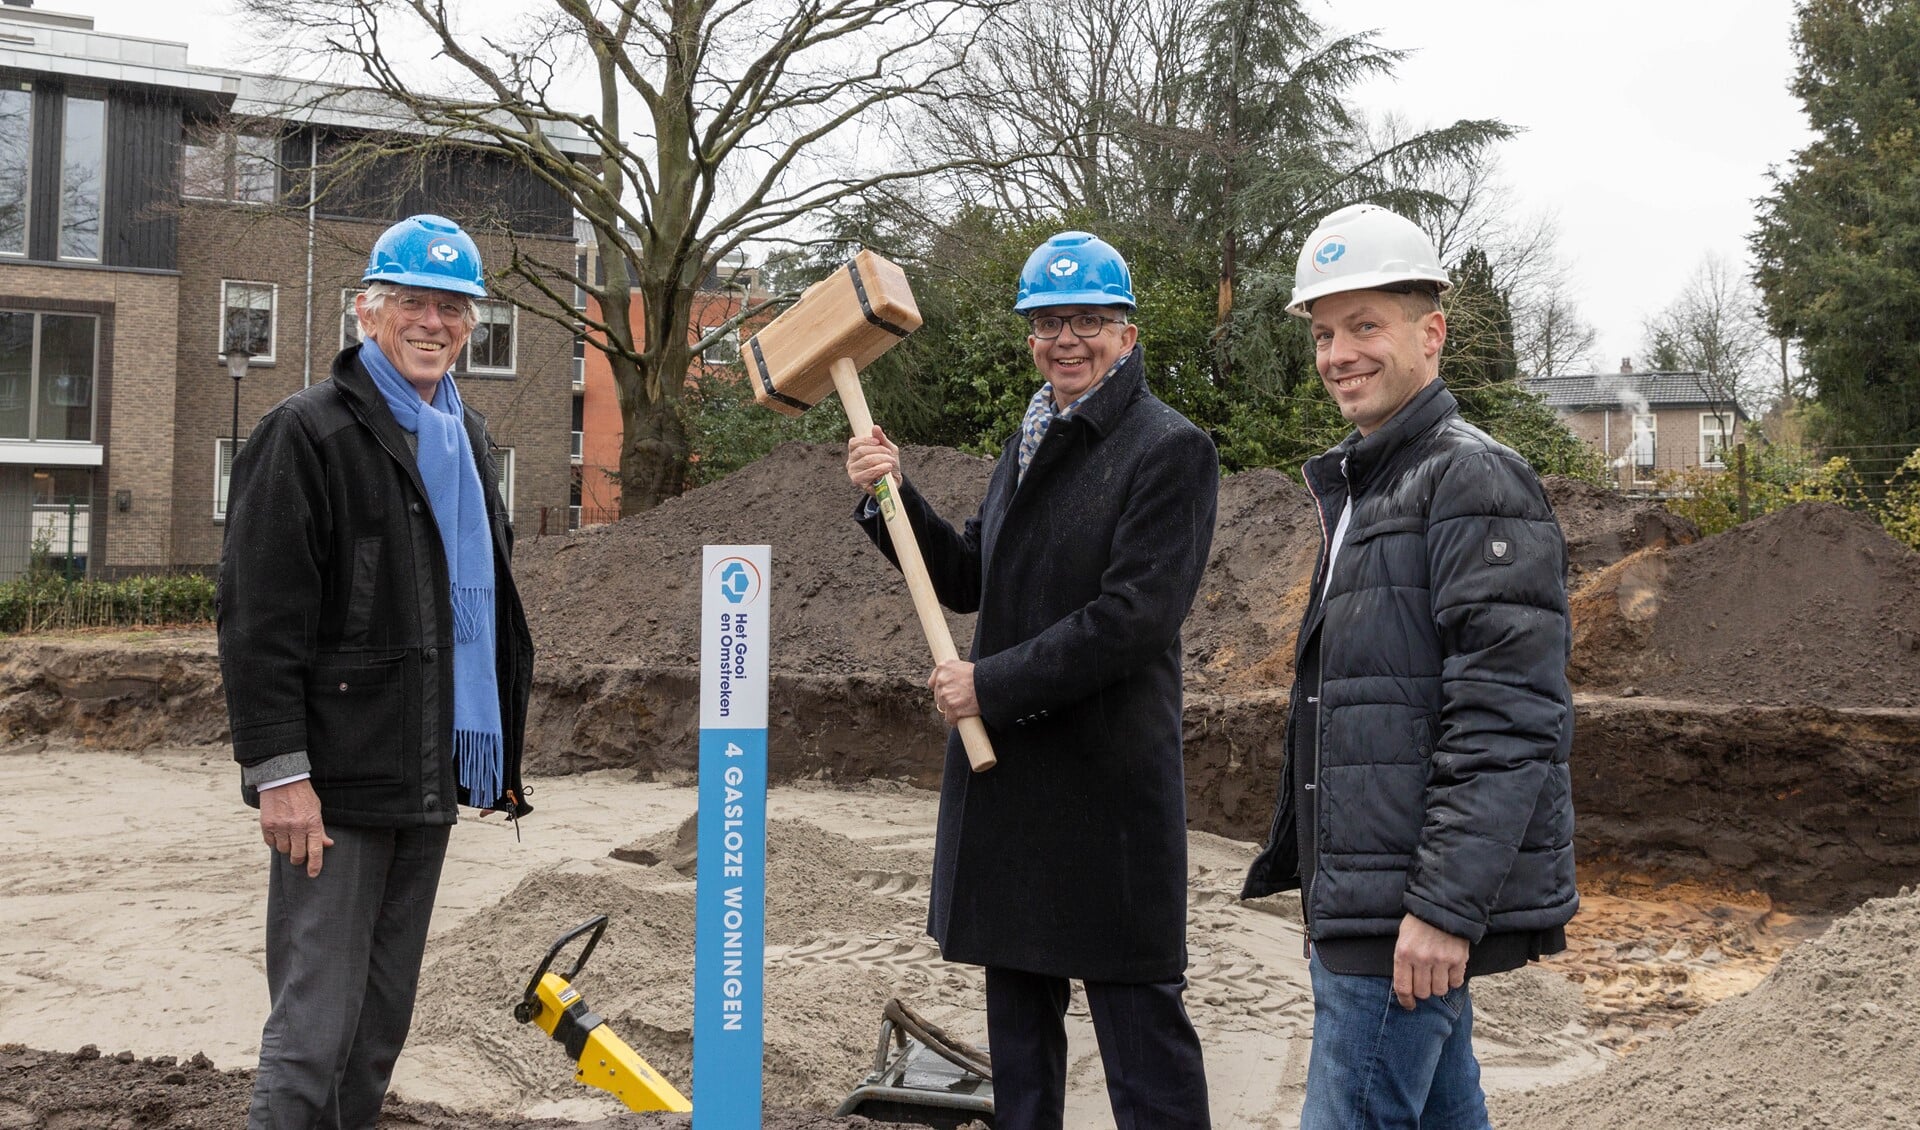 Directeur-bestuurder Maarten van Gessel (midden) bij de start van de bouw van vier sociale huurwoningen in Laren.

